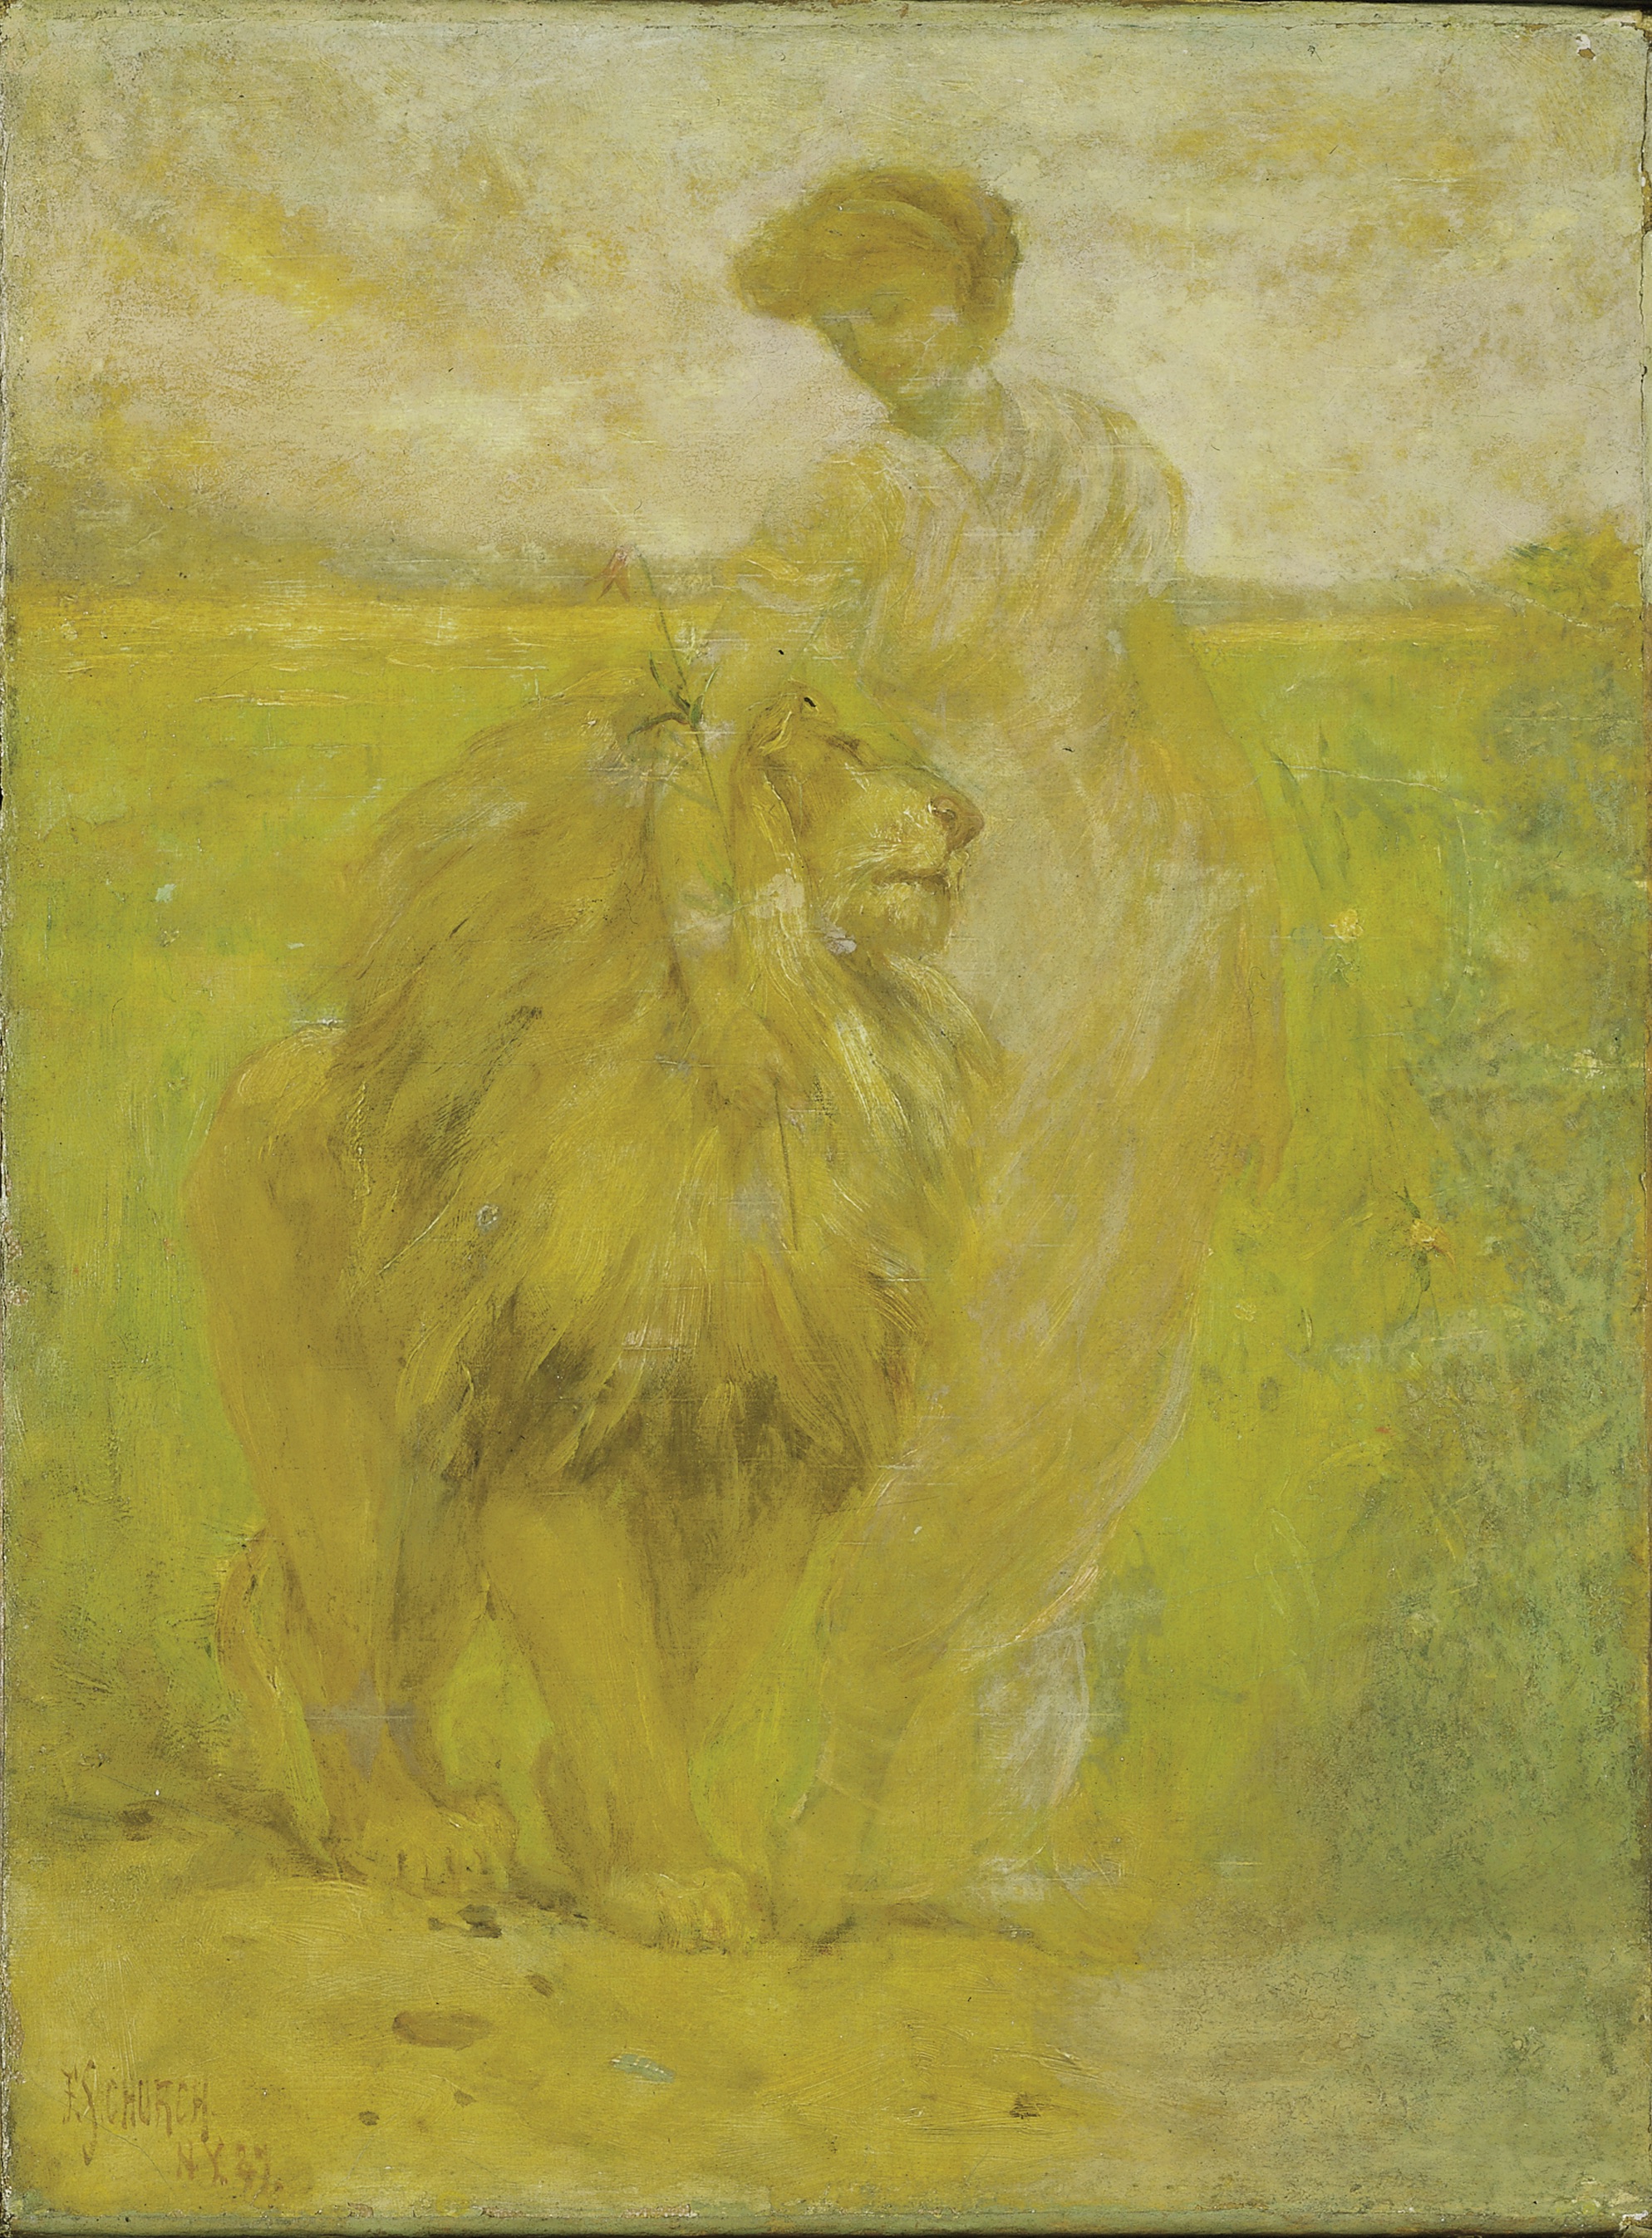 至高無上 by Frederick Stuart Church - 1887 - 40.9 x 30.4 cm 